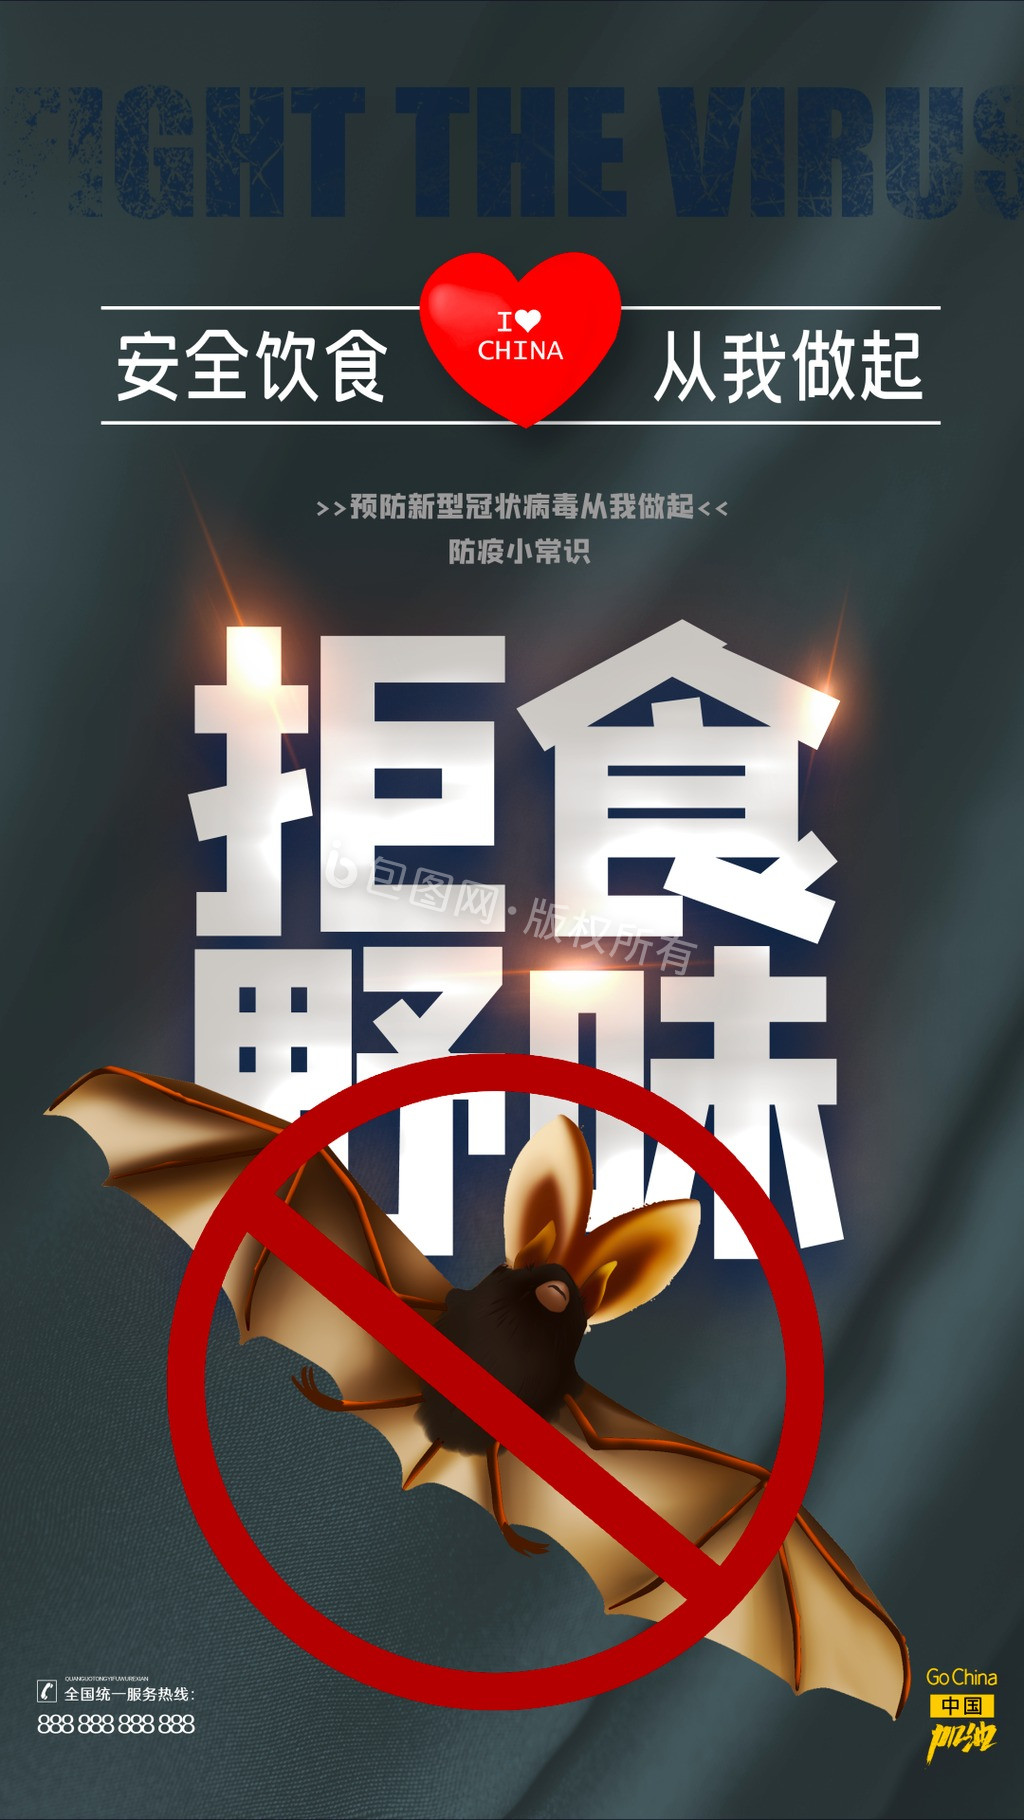 大气防疫常识武汉加油系列动态海报2图片